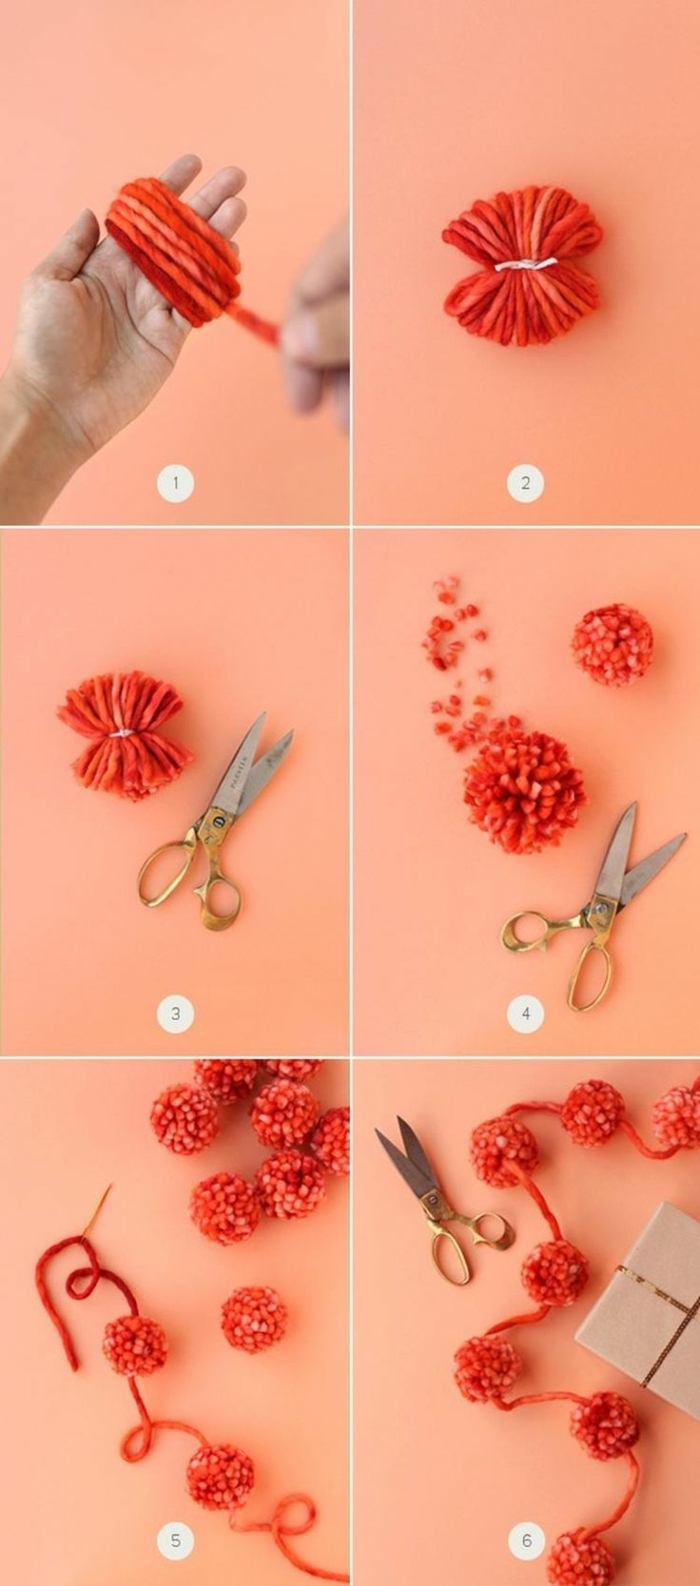 técnica fácil para hacer una guirnalda de Navidad hecha de pompones DIY, pompones de lana en color rojo paso a paso 